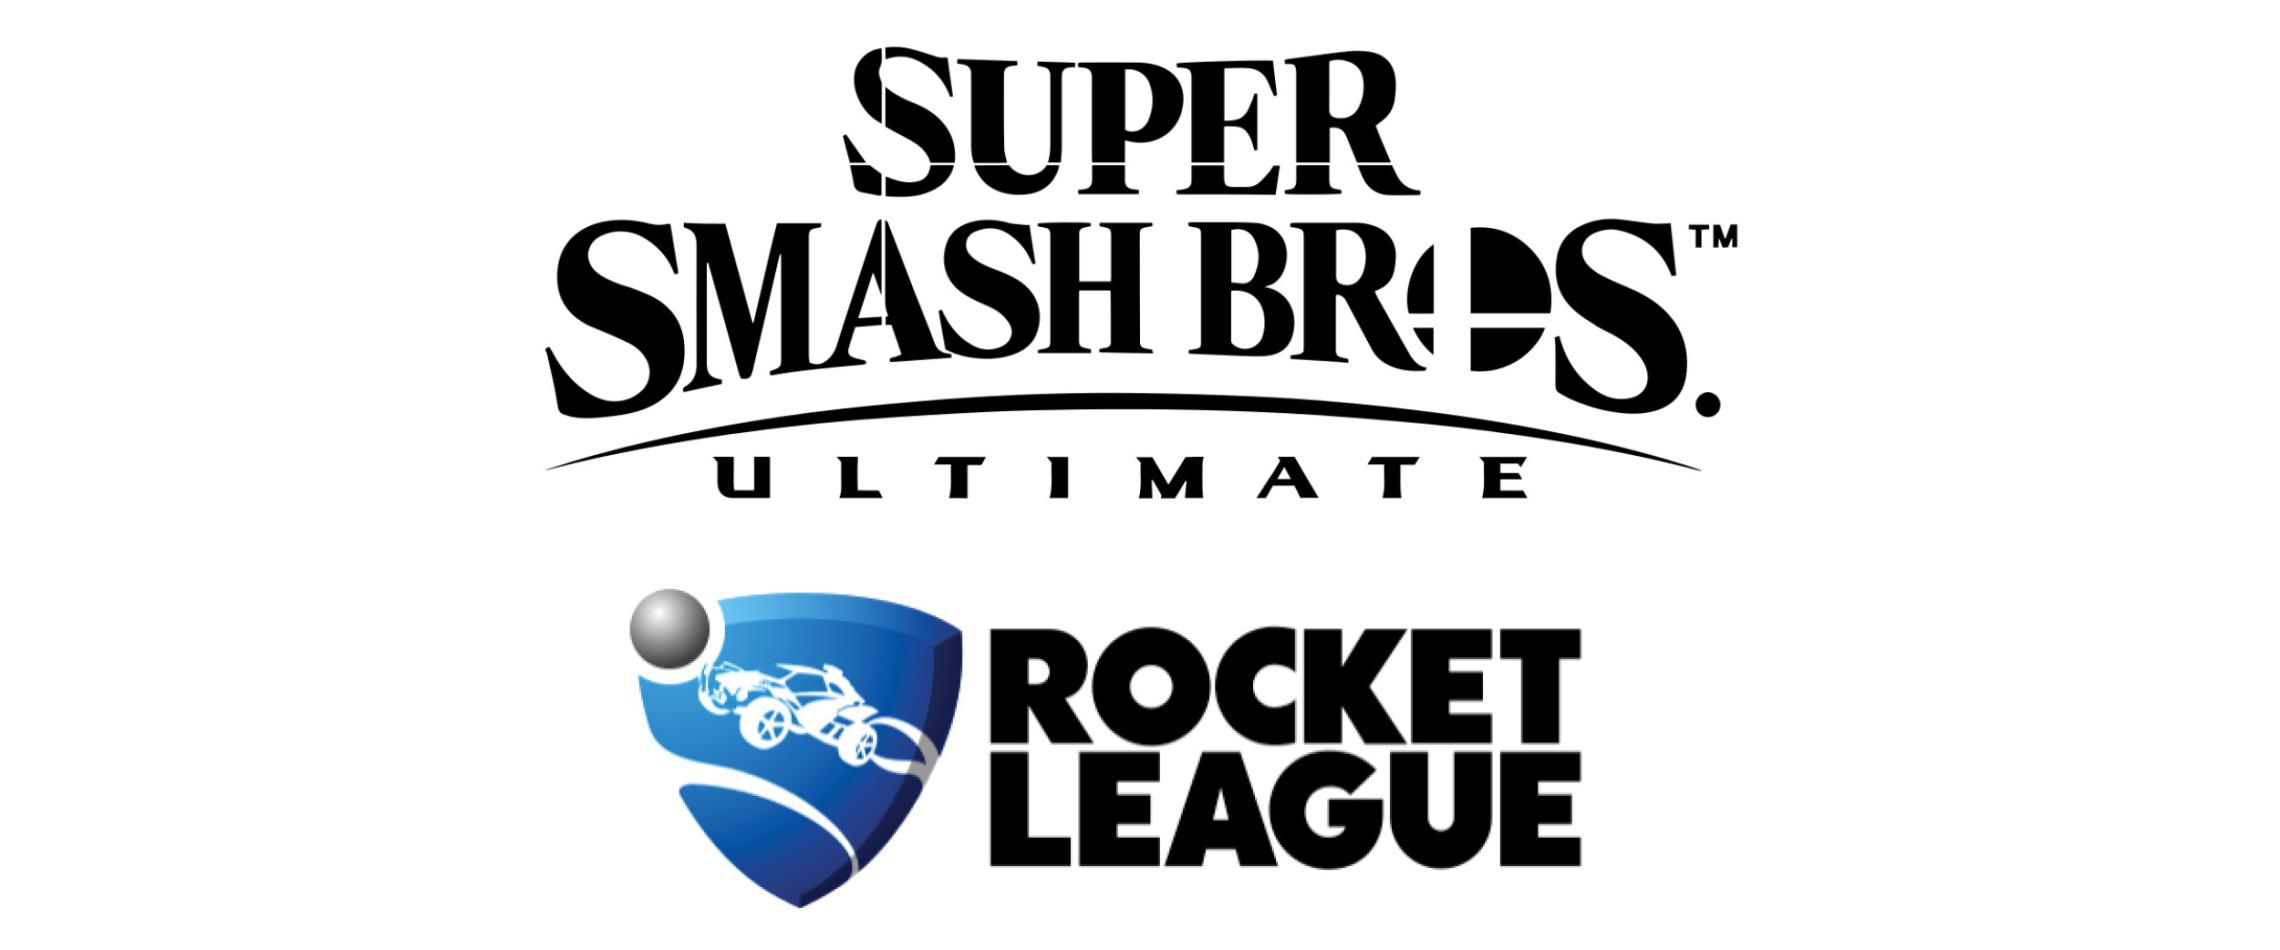 Image of video game logos